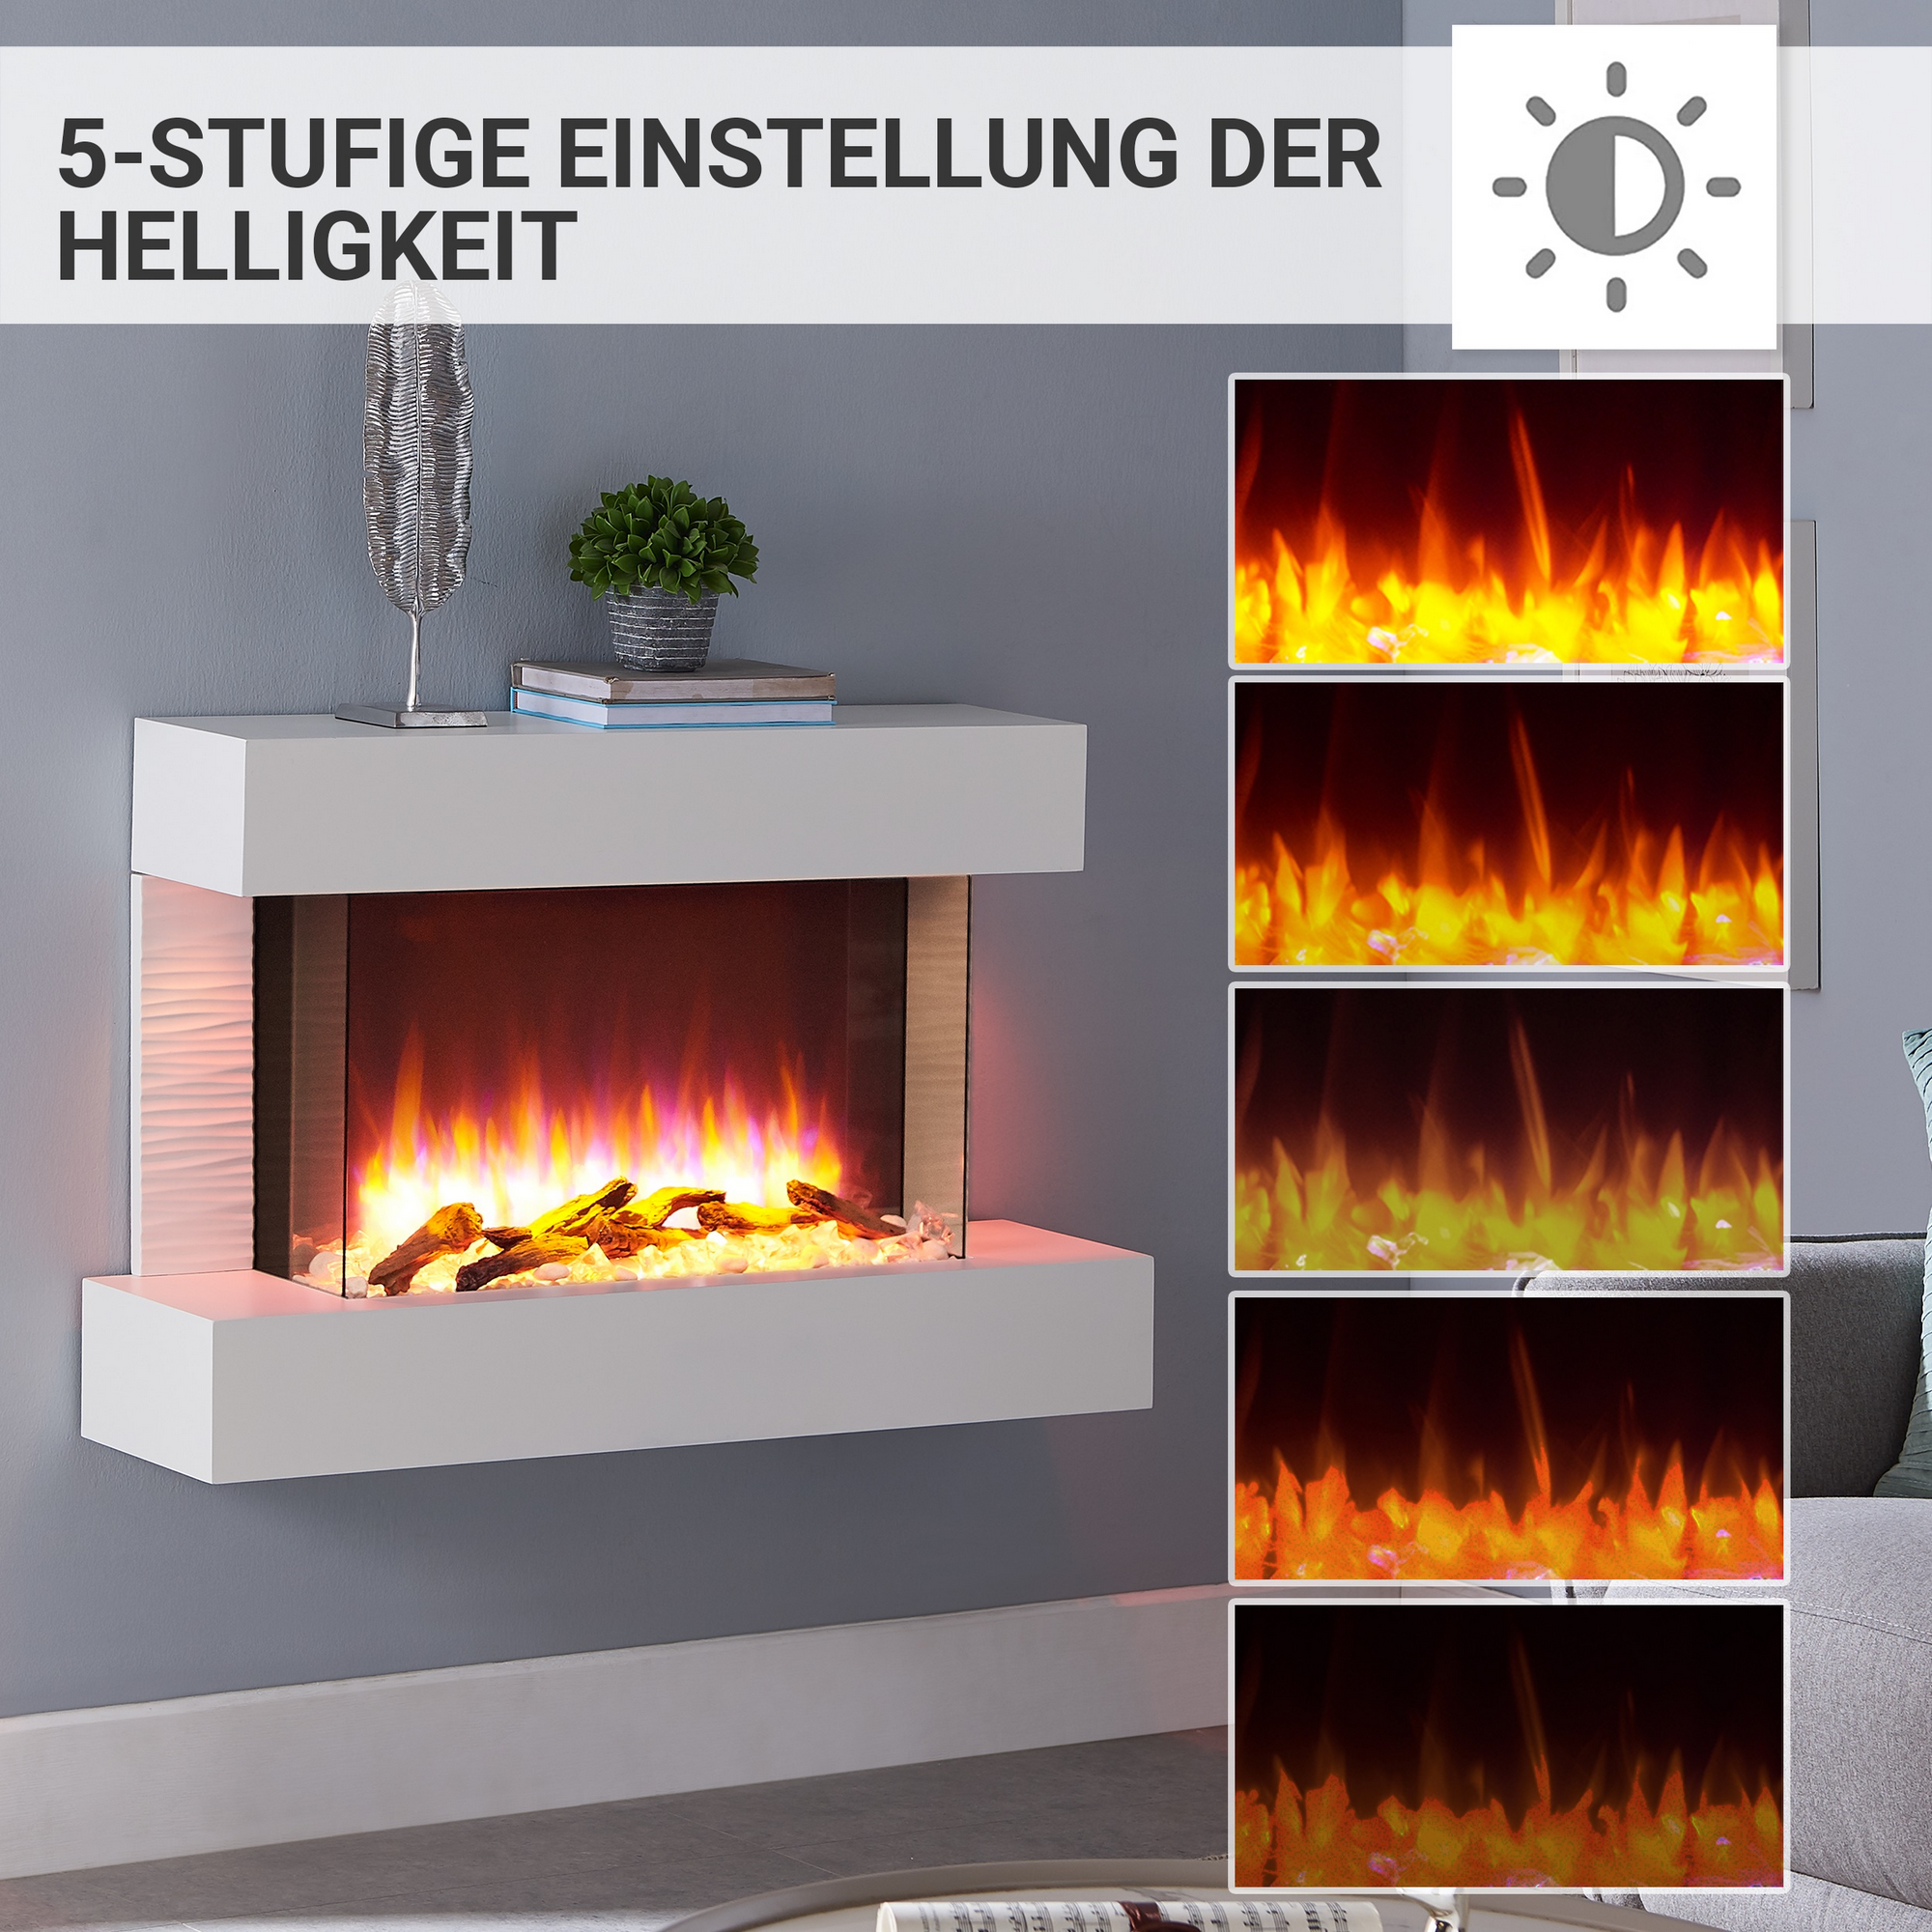 Elektro-Standkamin 'Aidan' weiß 2000 W, 3D-Flammeneffekt Fernbedienung 127 x 58,9 x 25 cm + product picture